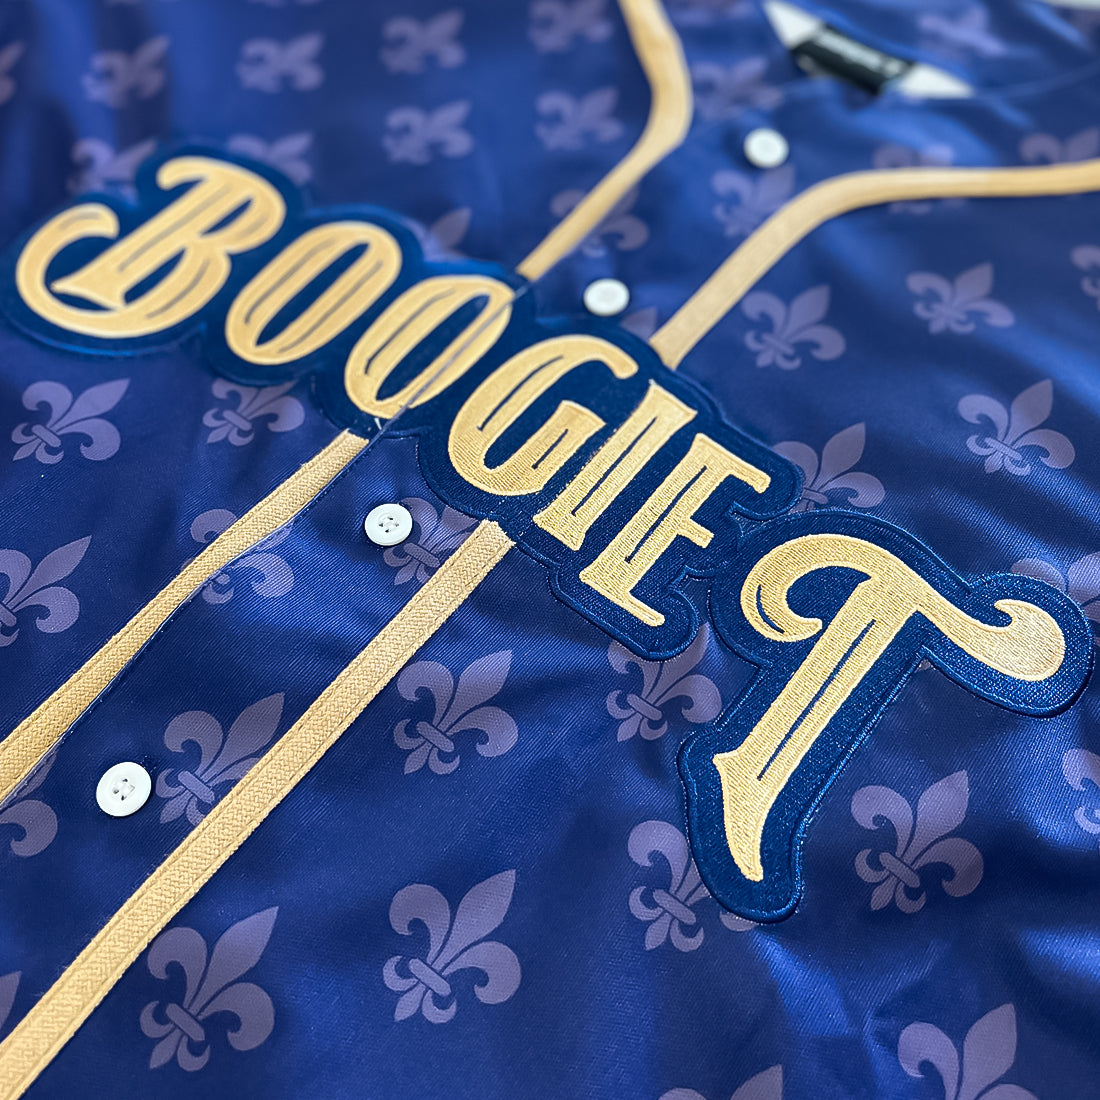 Boogie T - Fleur - Premium Baseball Jersey